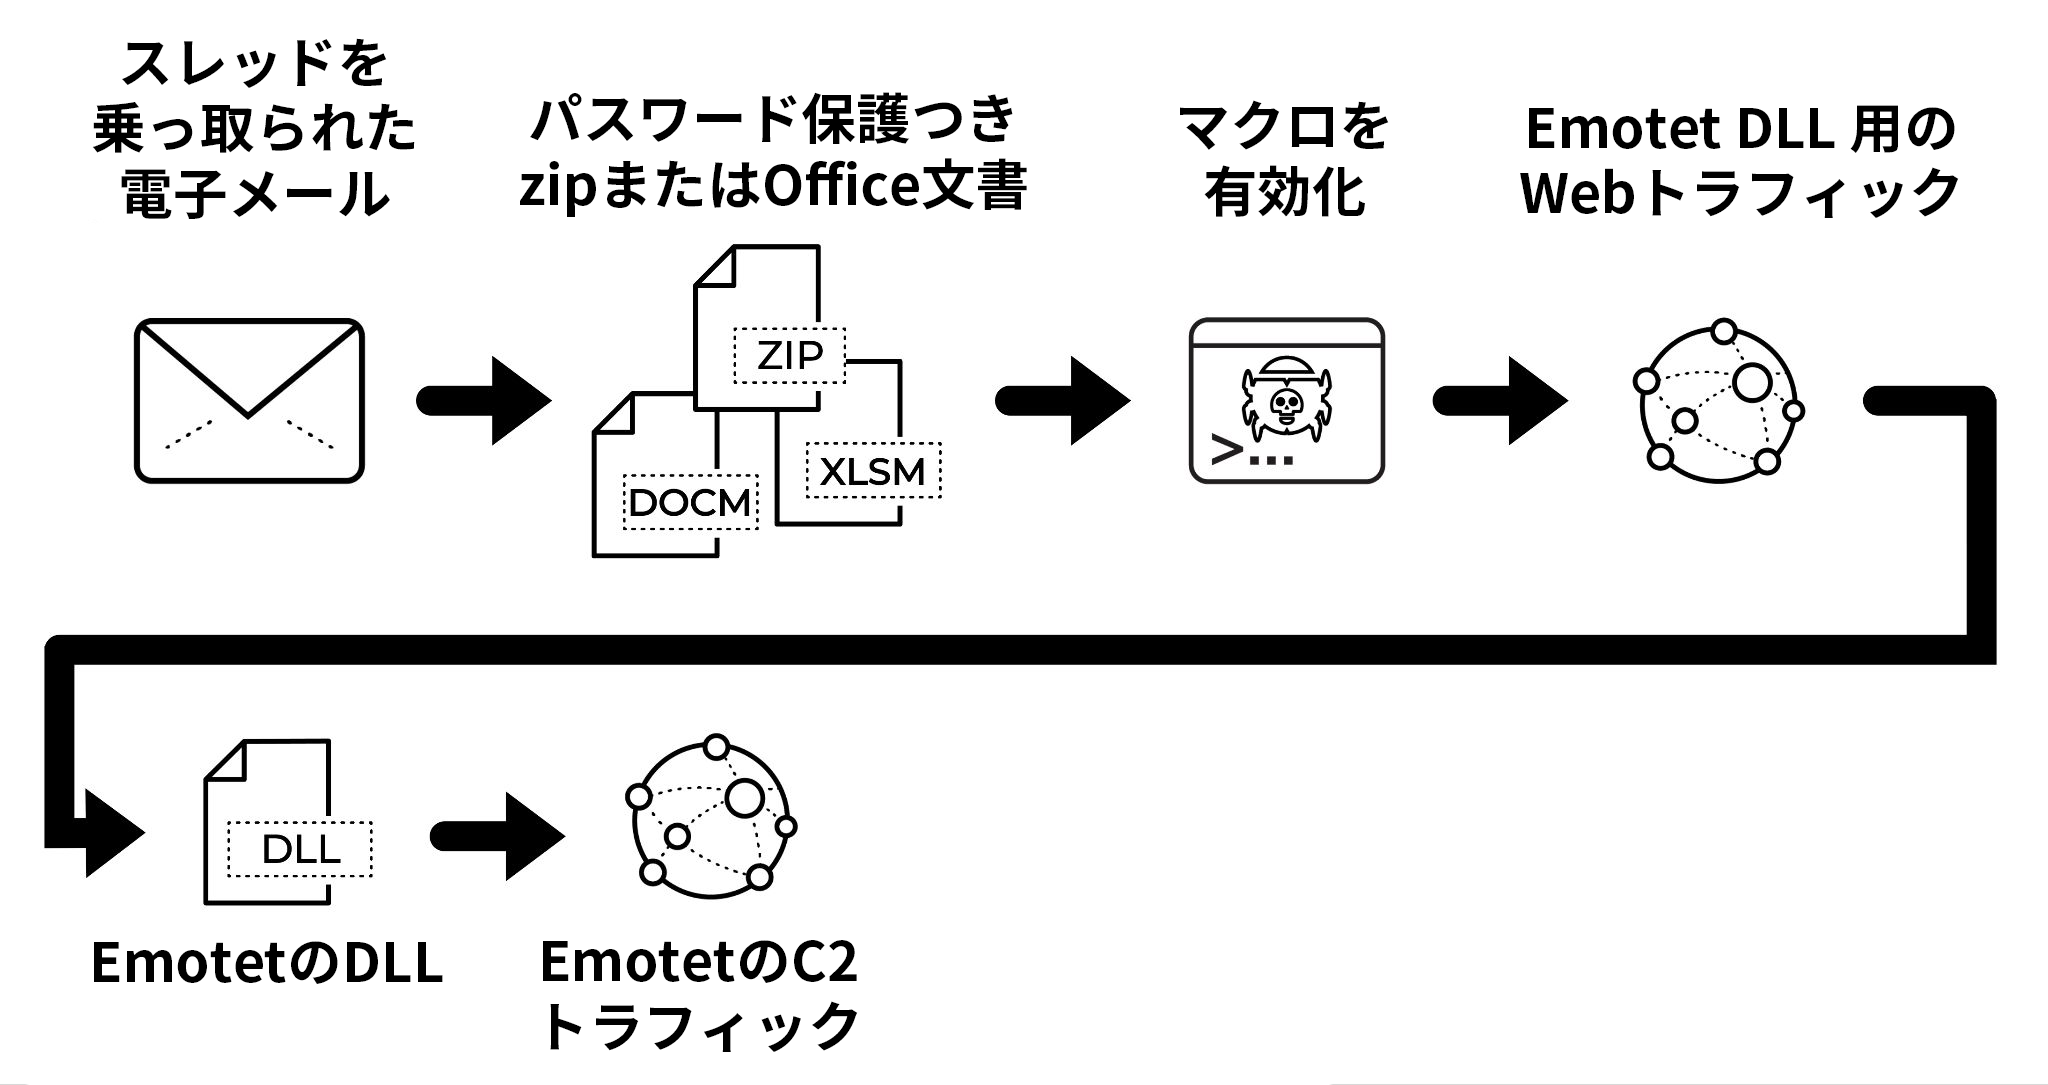 2021年11月15日(月)に観測されたEmotet感染チェーンを文書化したフローチャート。スレッド乗っ取りメール、パスワード保護されたZIPまたはOffice文書、マクロの有効化、Emotet DLLのWebトラフィック、Emotet DLL、Emotet C2トラフィック